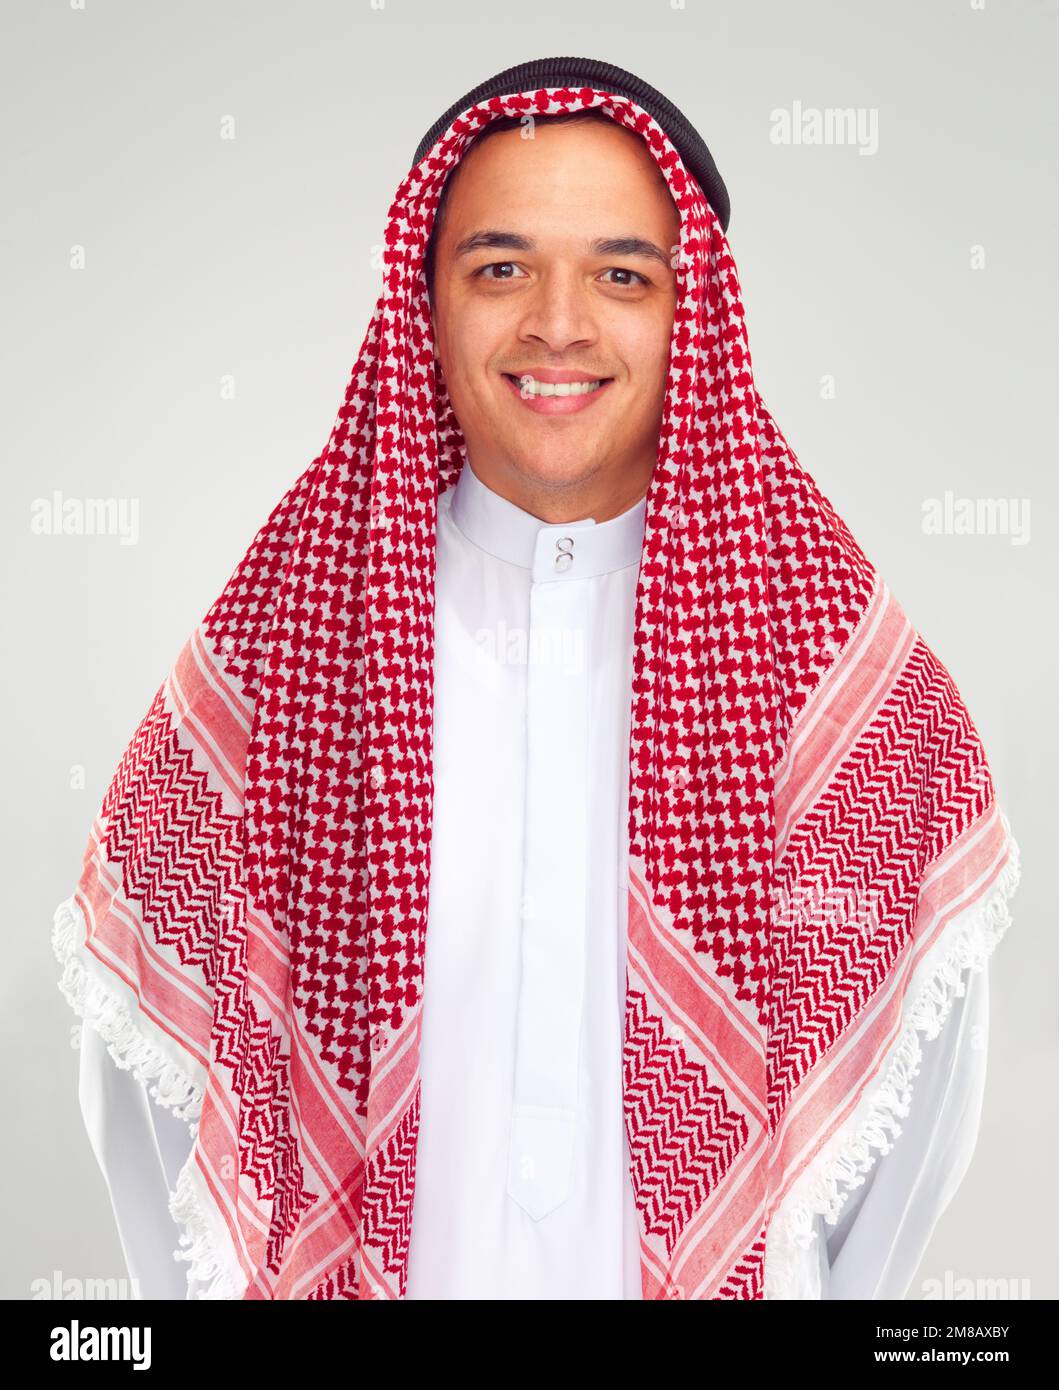 Ligero Accidental Boquilla Retrato, hombre y musulmán con bufanda árabe, sonrisa y feliz aislado sobre  fondo blanco. Fe, Islam con cultura islámica o árabe, positivo Fotografía de  stock - Alamy